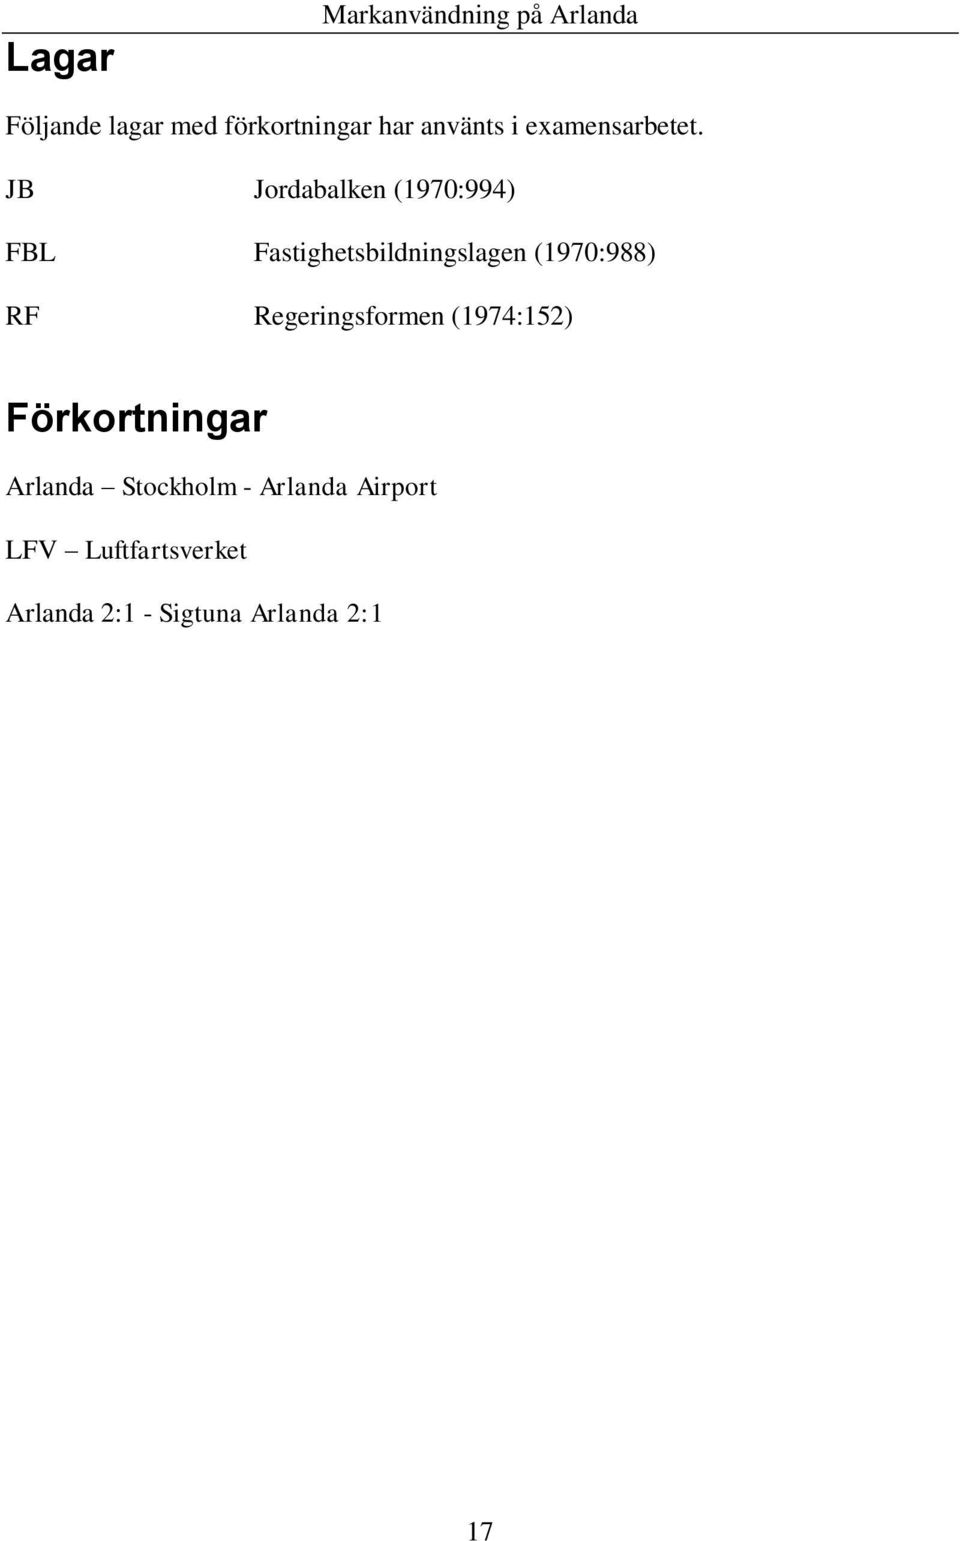 JB Jordabalken (1970:994) FBL Fastighetsbildningslagen (1970:988) RF